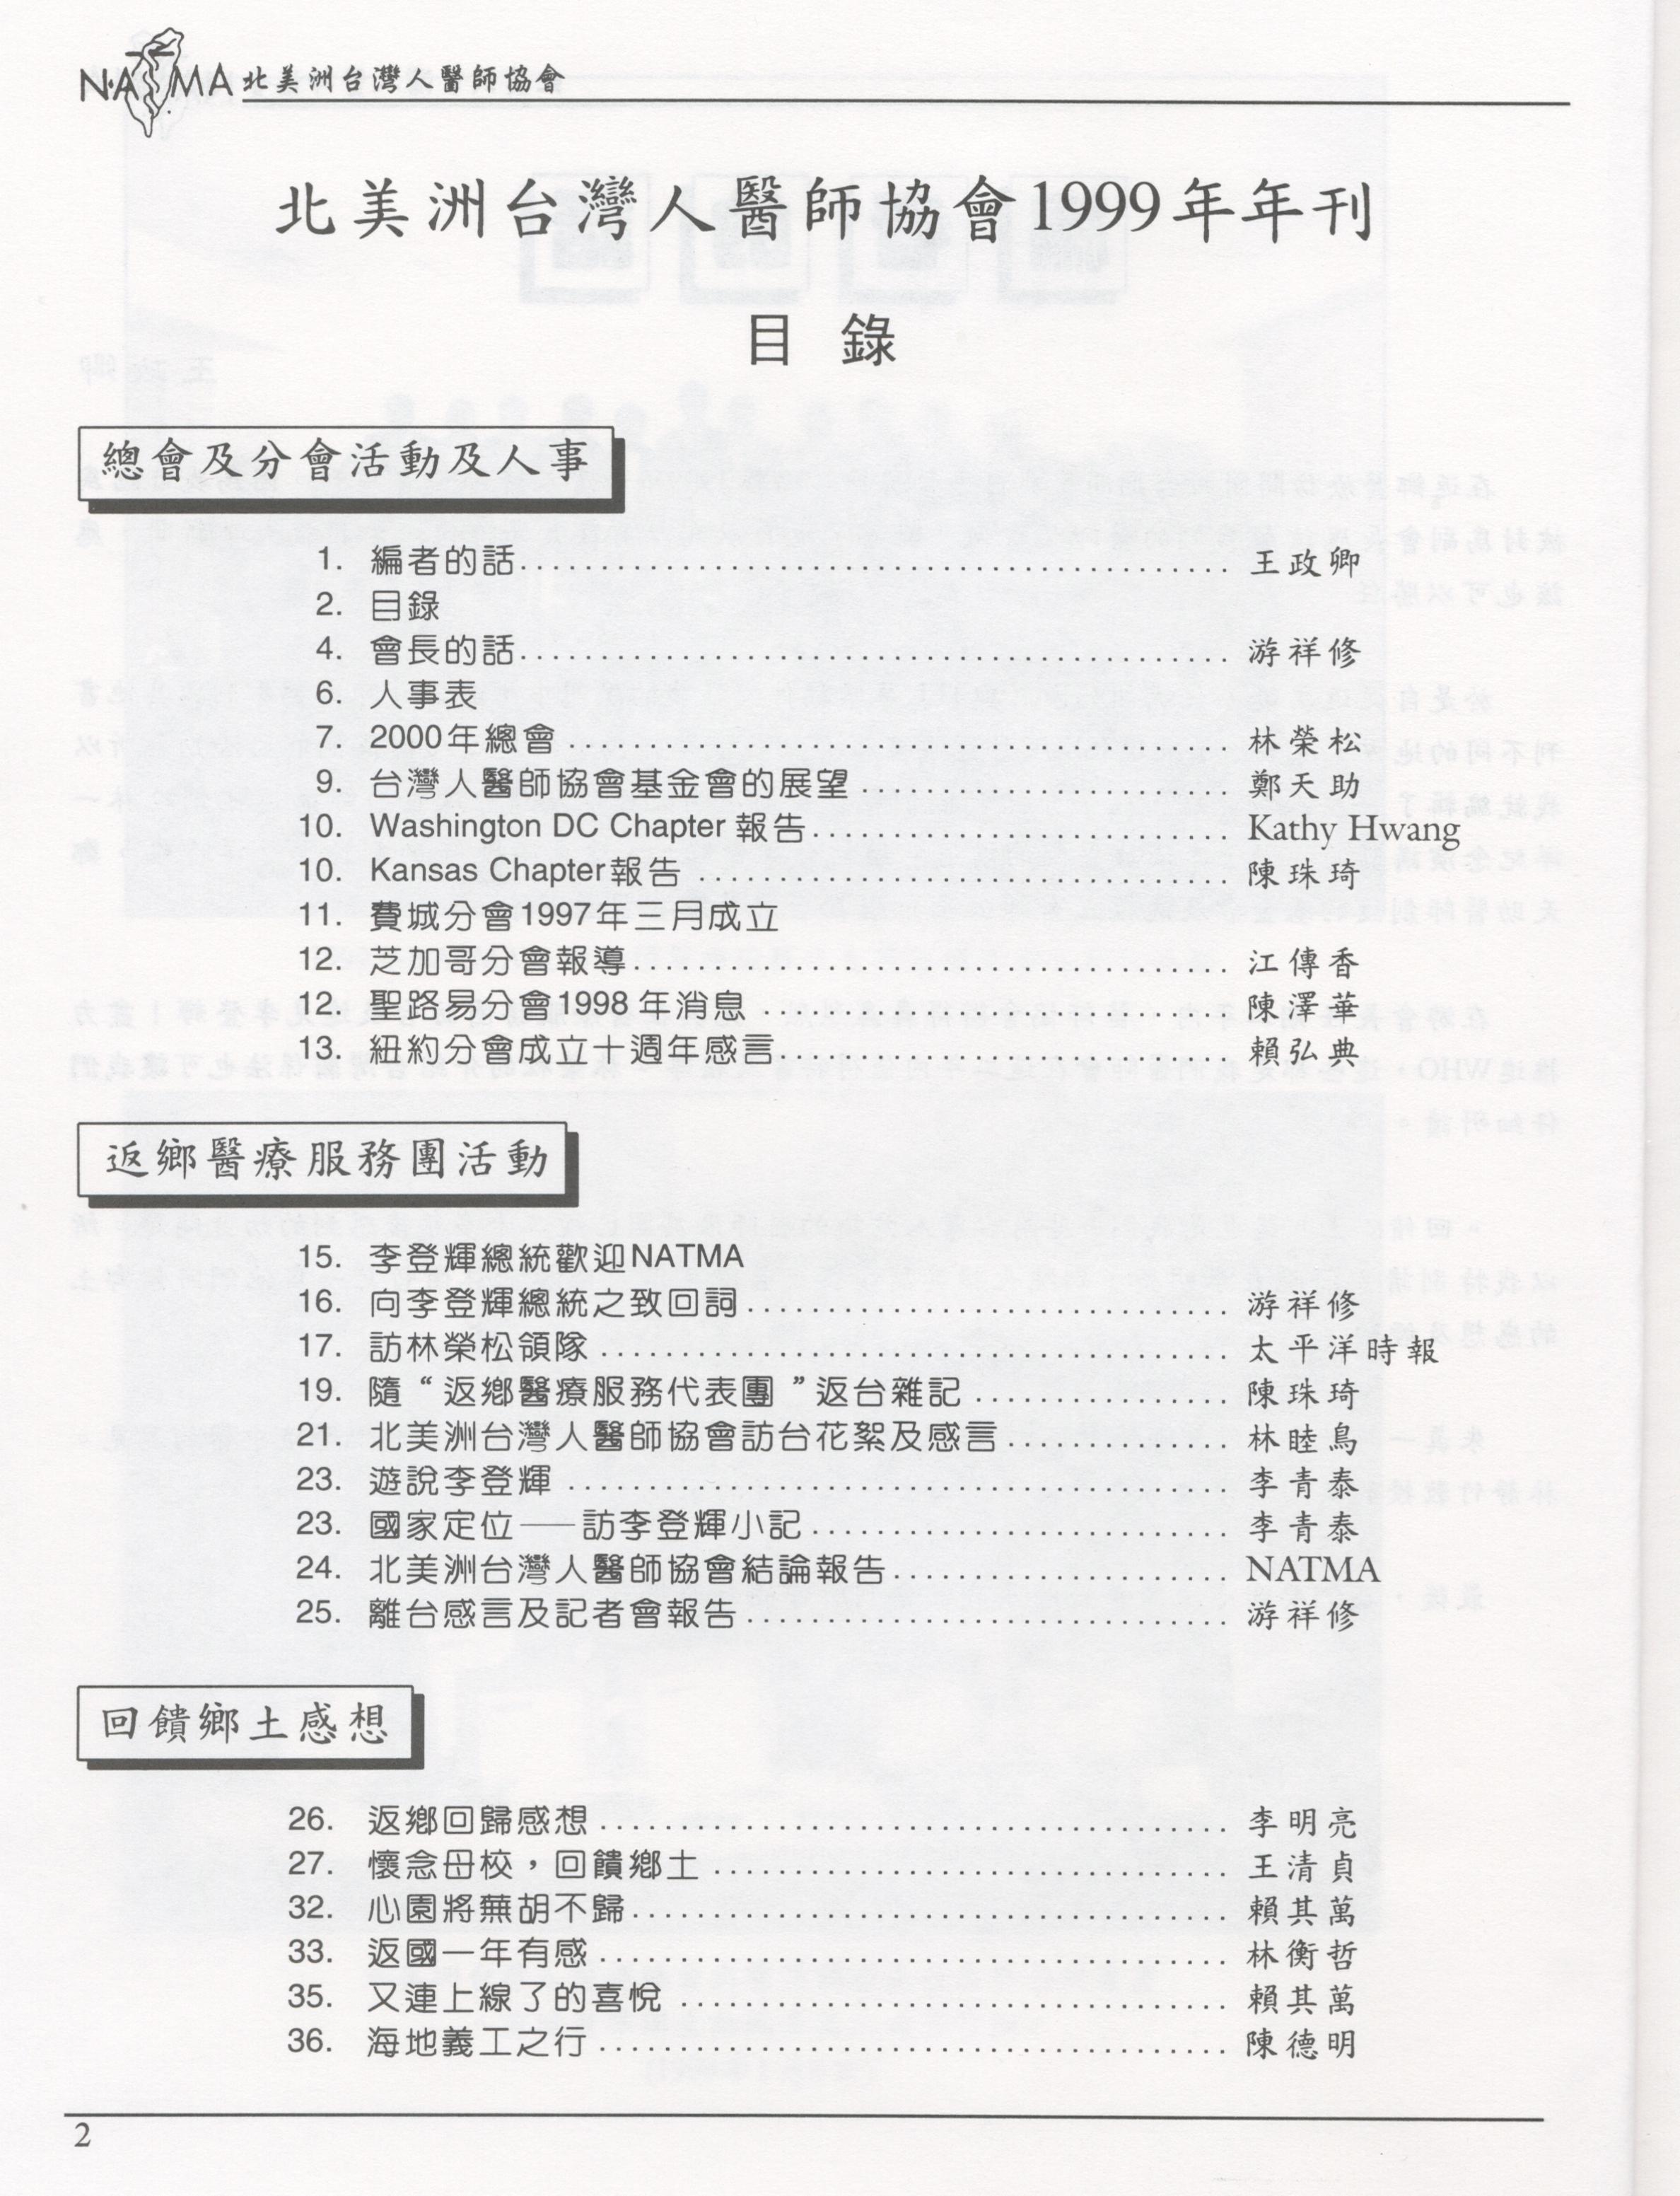 740_北美洲台灣人醫師協會1999年刊.doc - 0002